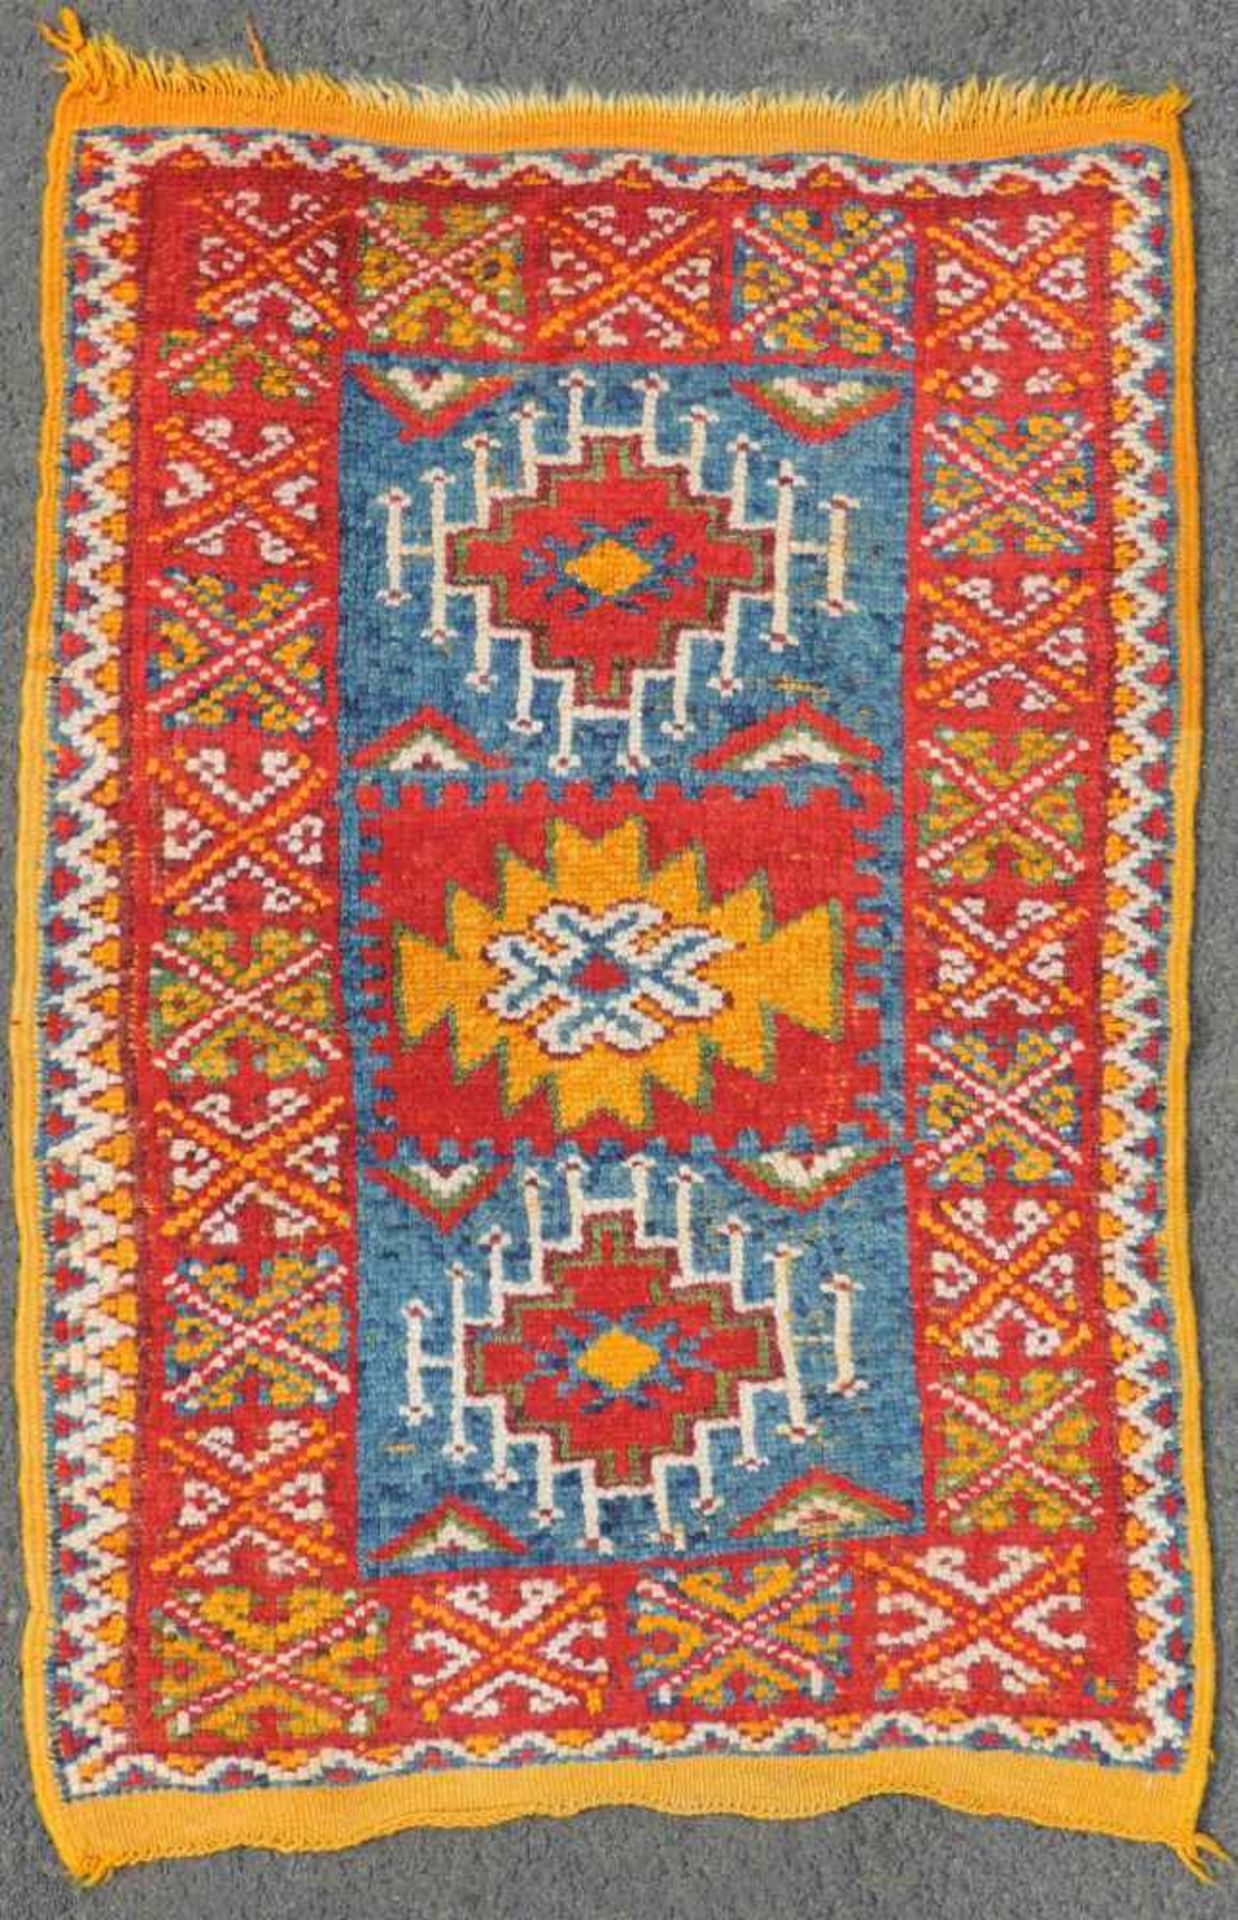 Rabat Yastik Teppich. Marokko. Alt, um 1920. 92 cm x 63 cm. Handgeknüpft. Wolle auf Wolle. Rabat